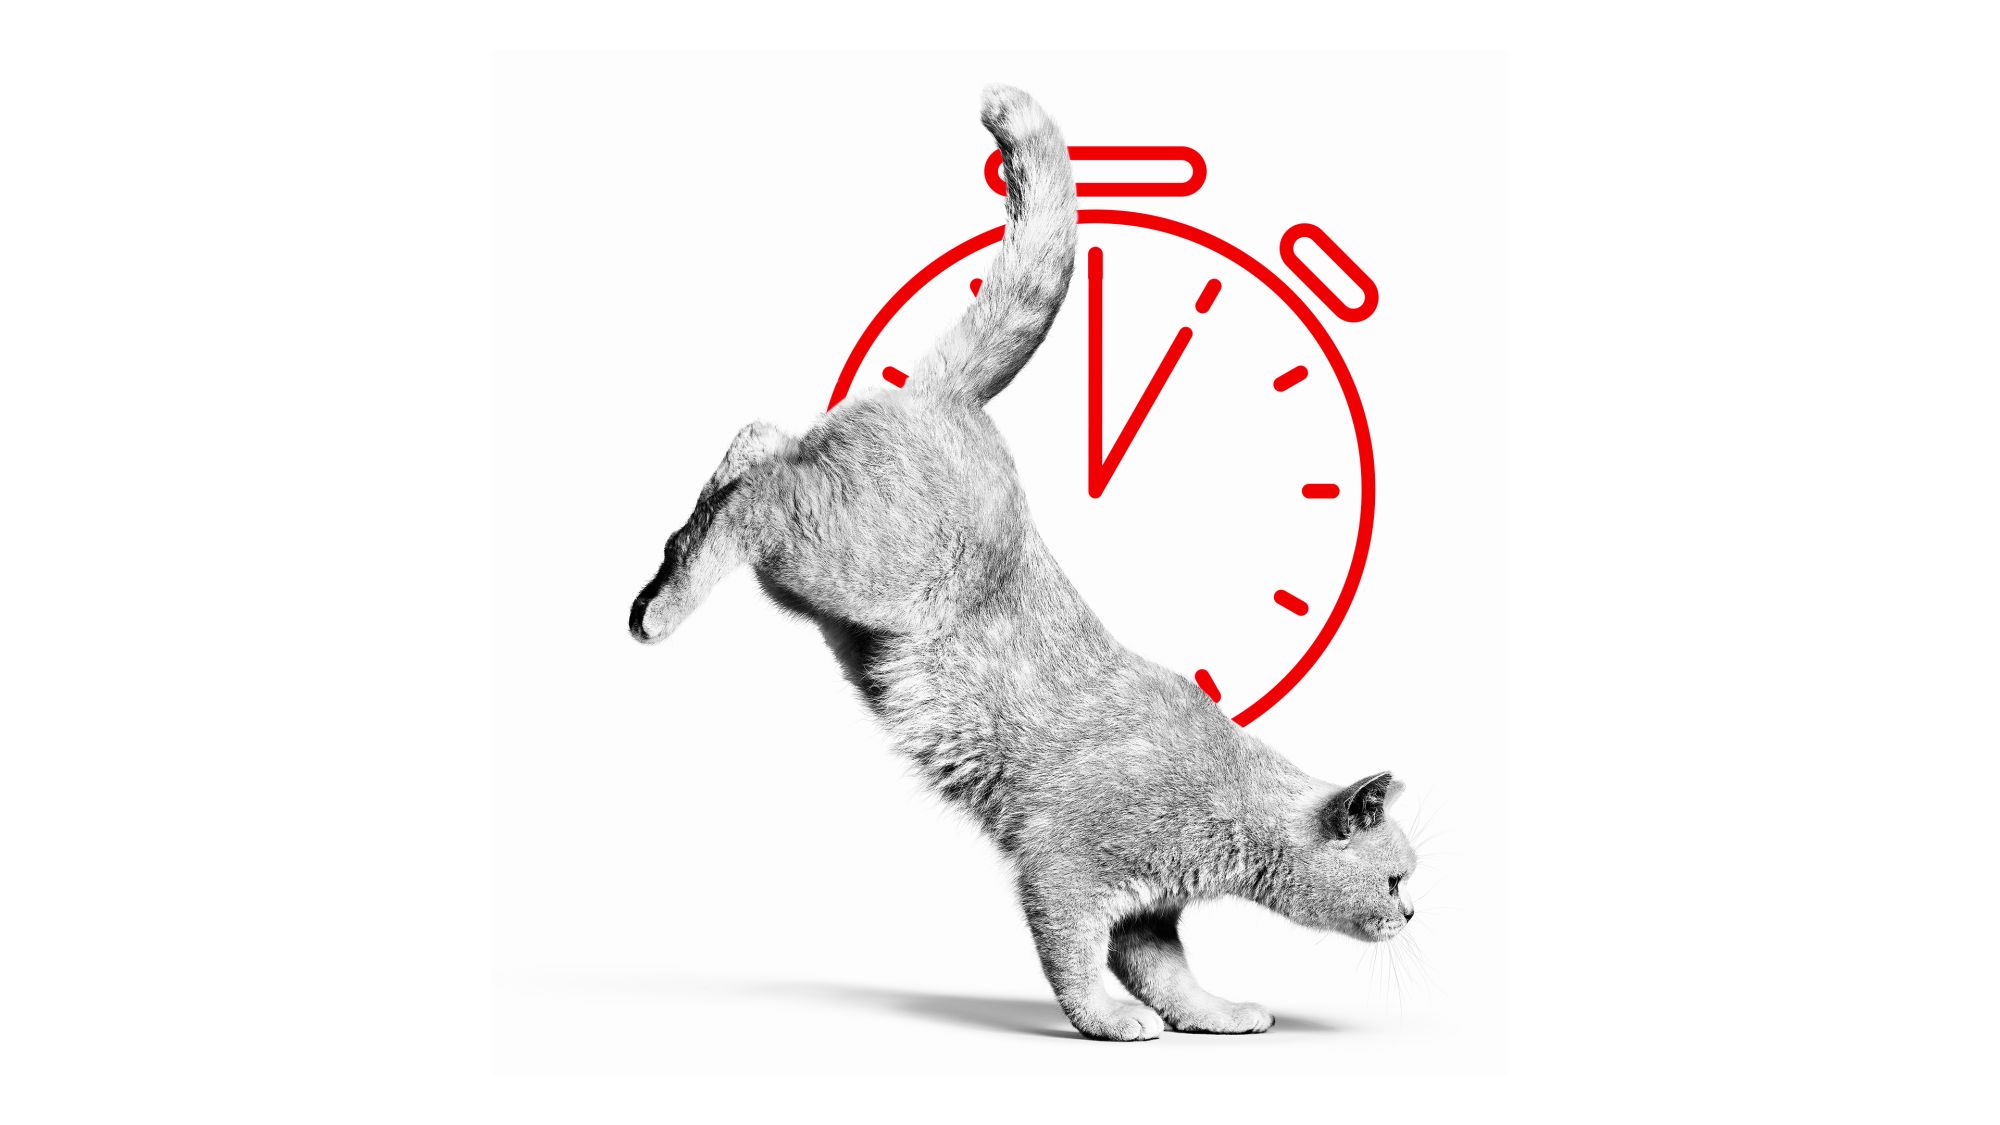 British shorthair adulte sautant en noir et blanc avec une balle rouge et une illustration de chronomètre derrière